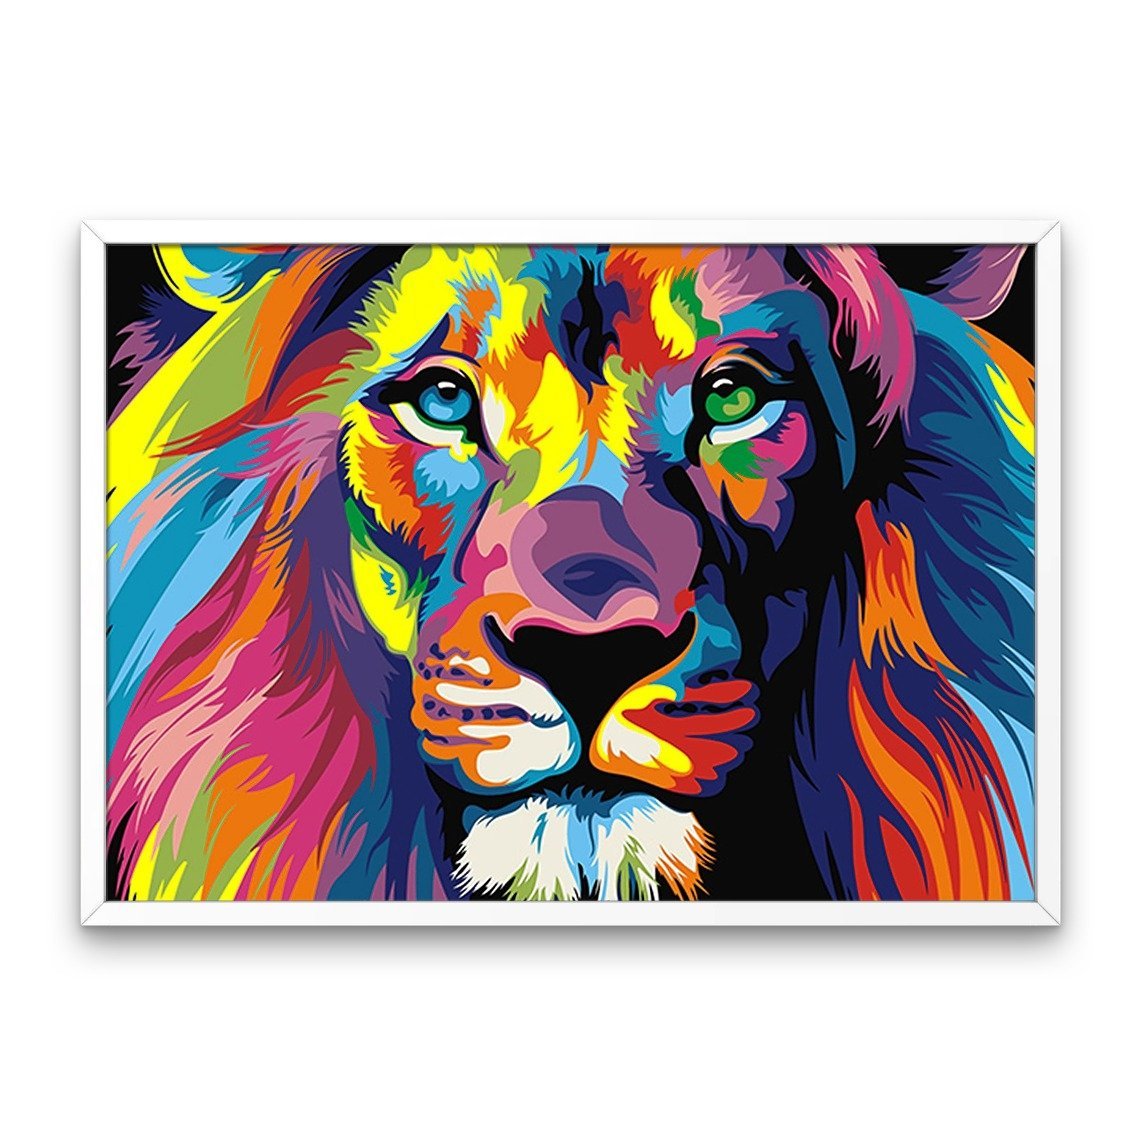 Fargerike løve